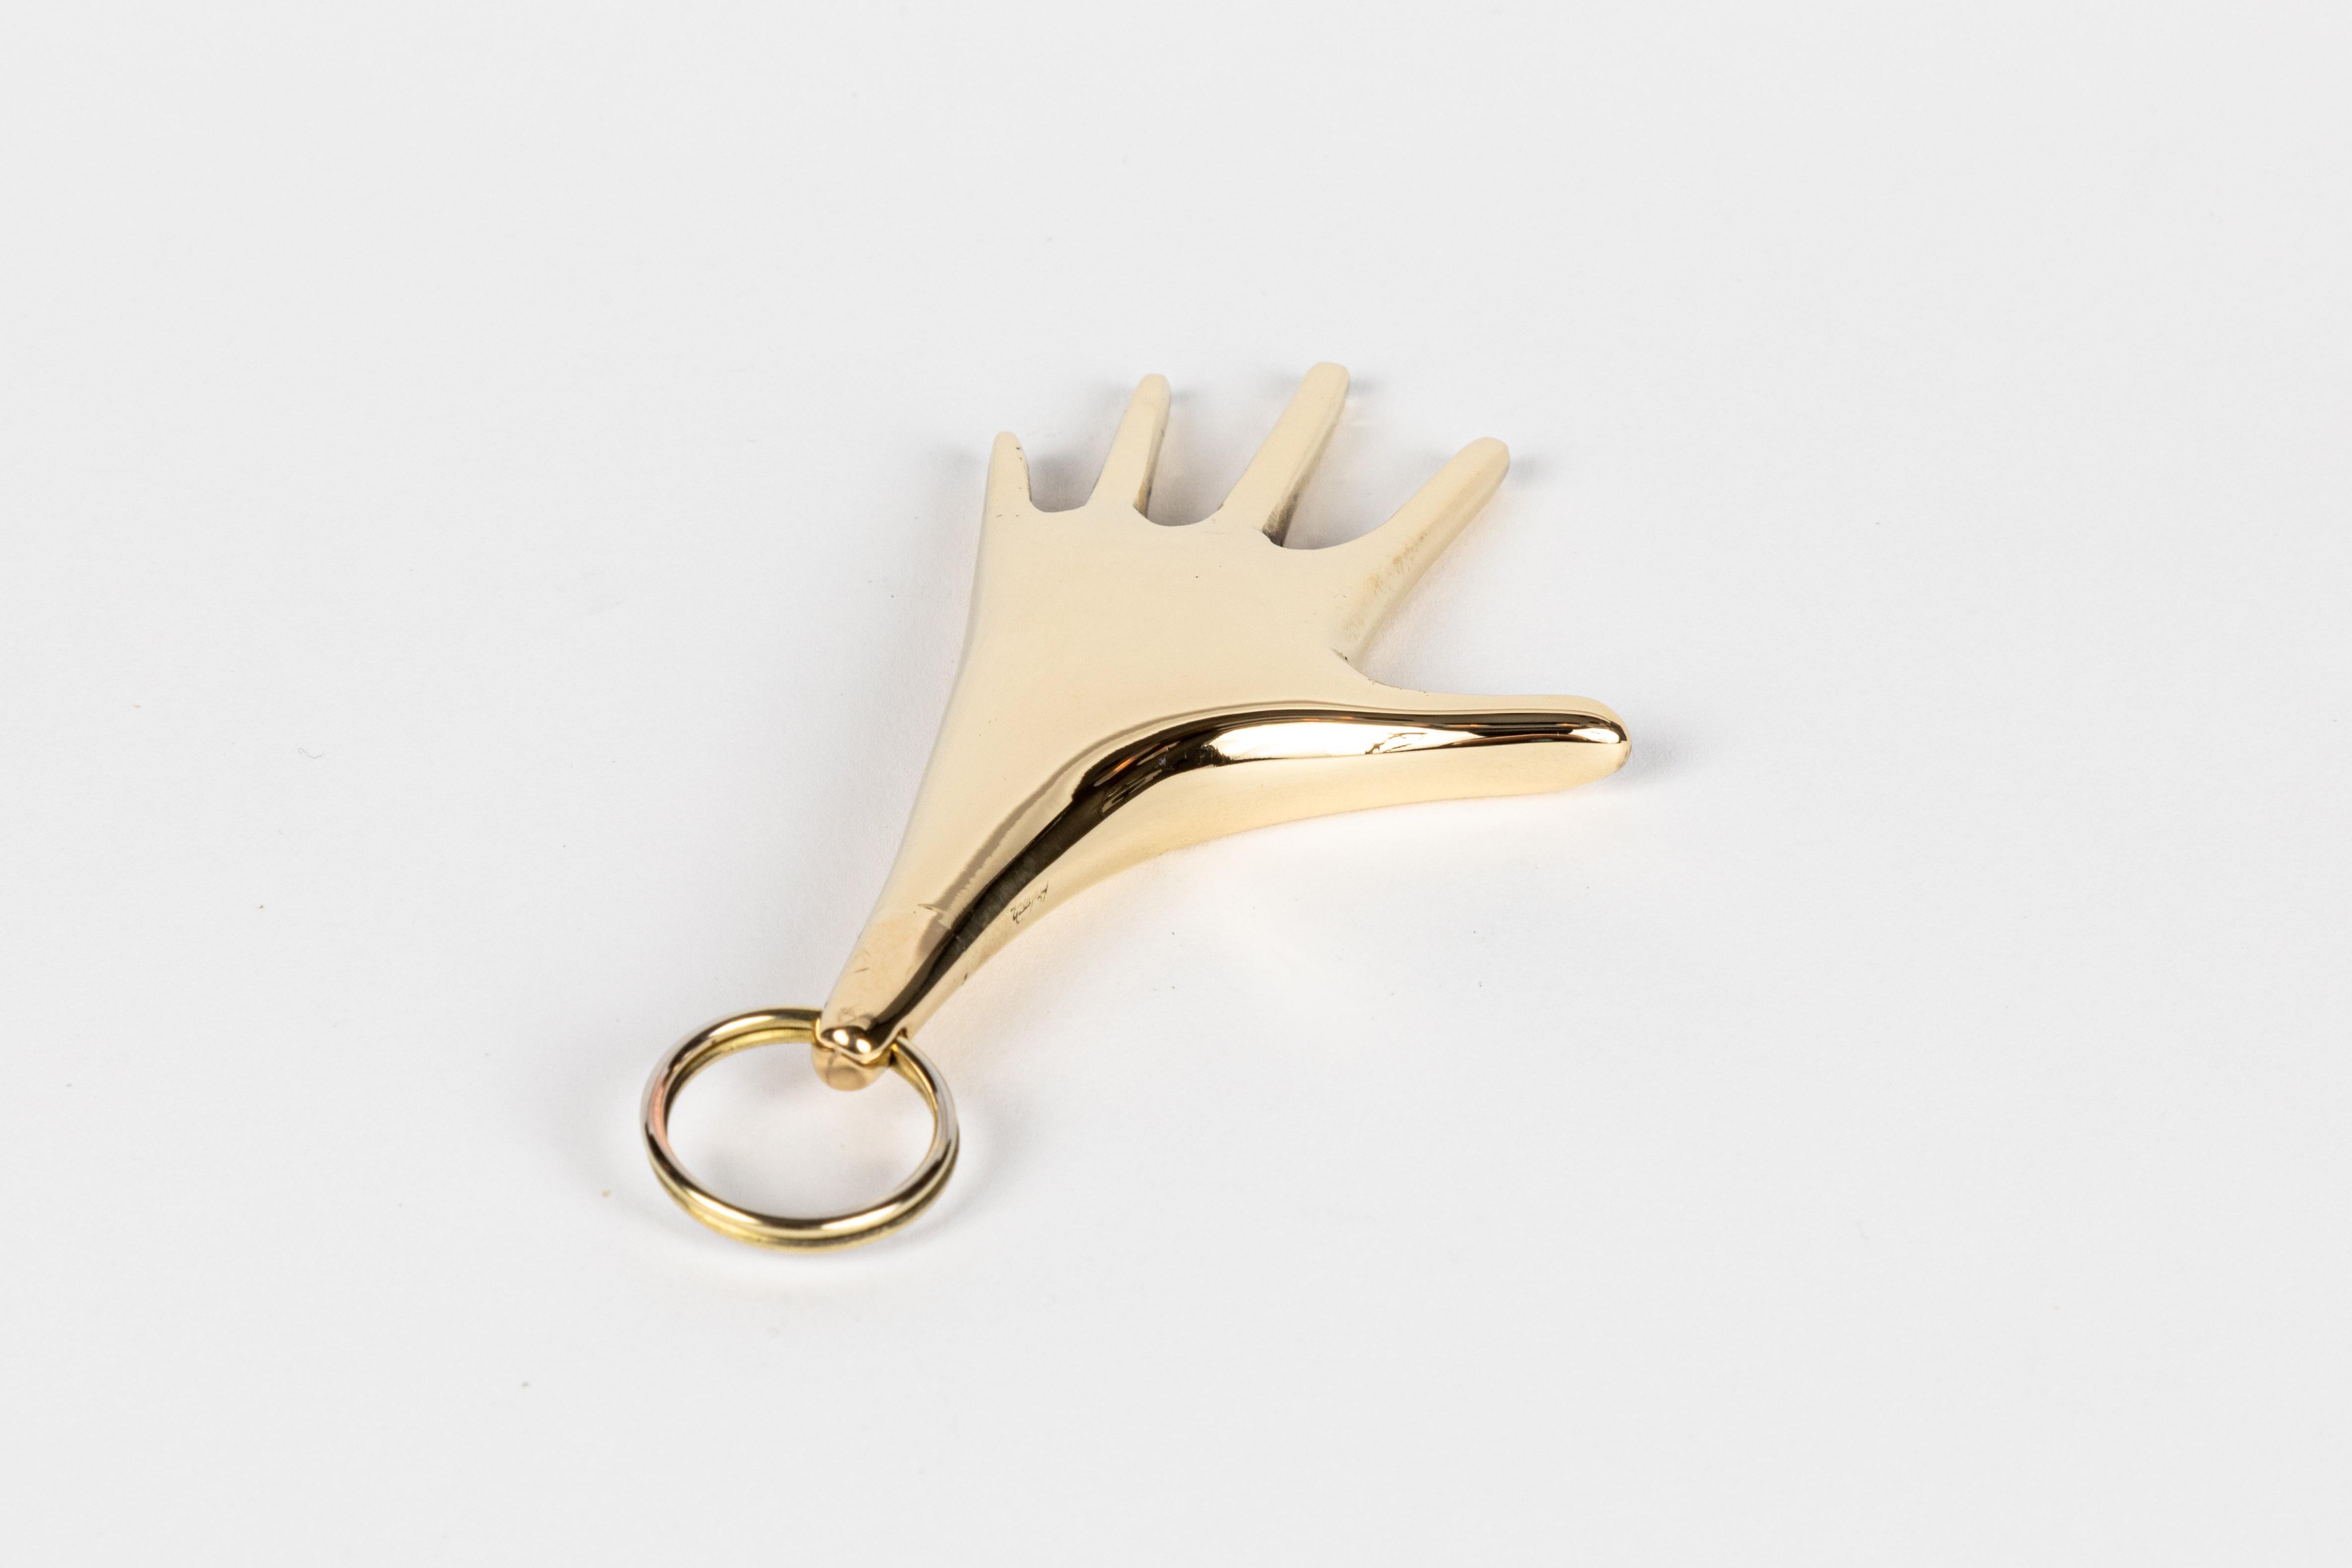 Carl Auböck Modell #5732 'Hand' Messingfigur Schlüsselanhänger. Dieses in den 1950er Jahren entworfene, unglaublich raffinierte und skulpturale Objekt ist aus poliertem Messing handgefertigt. 

Der Preis gilt pro Stück. Auf Lager und versandfertig.